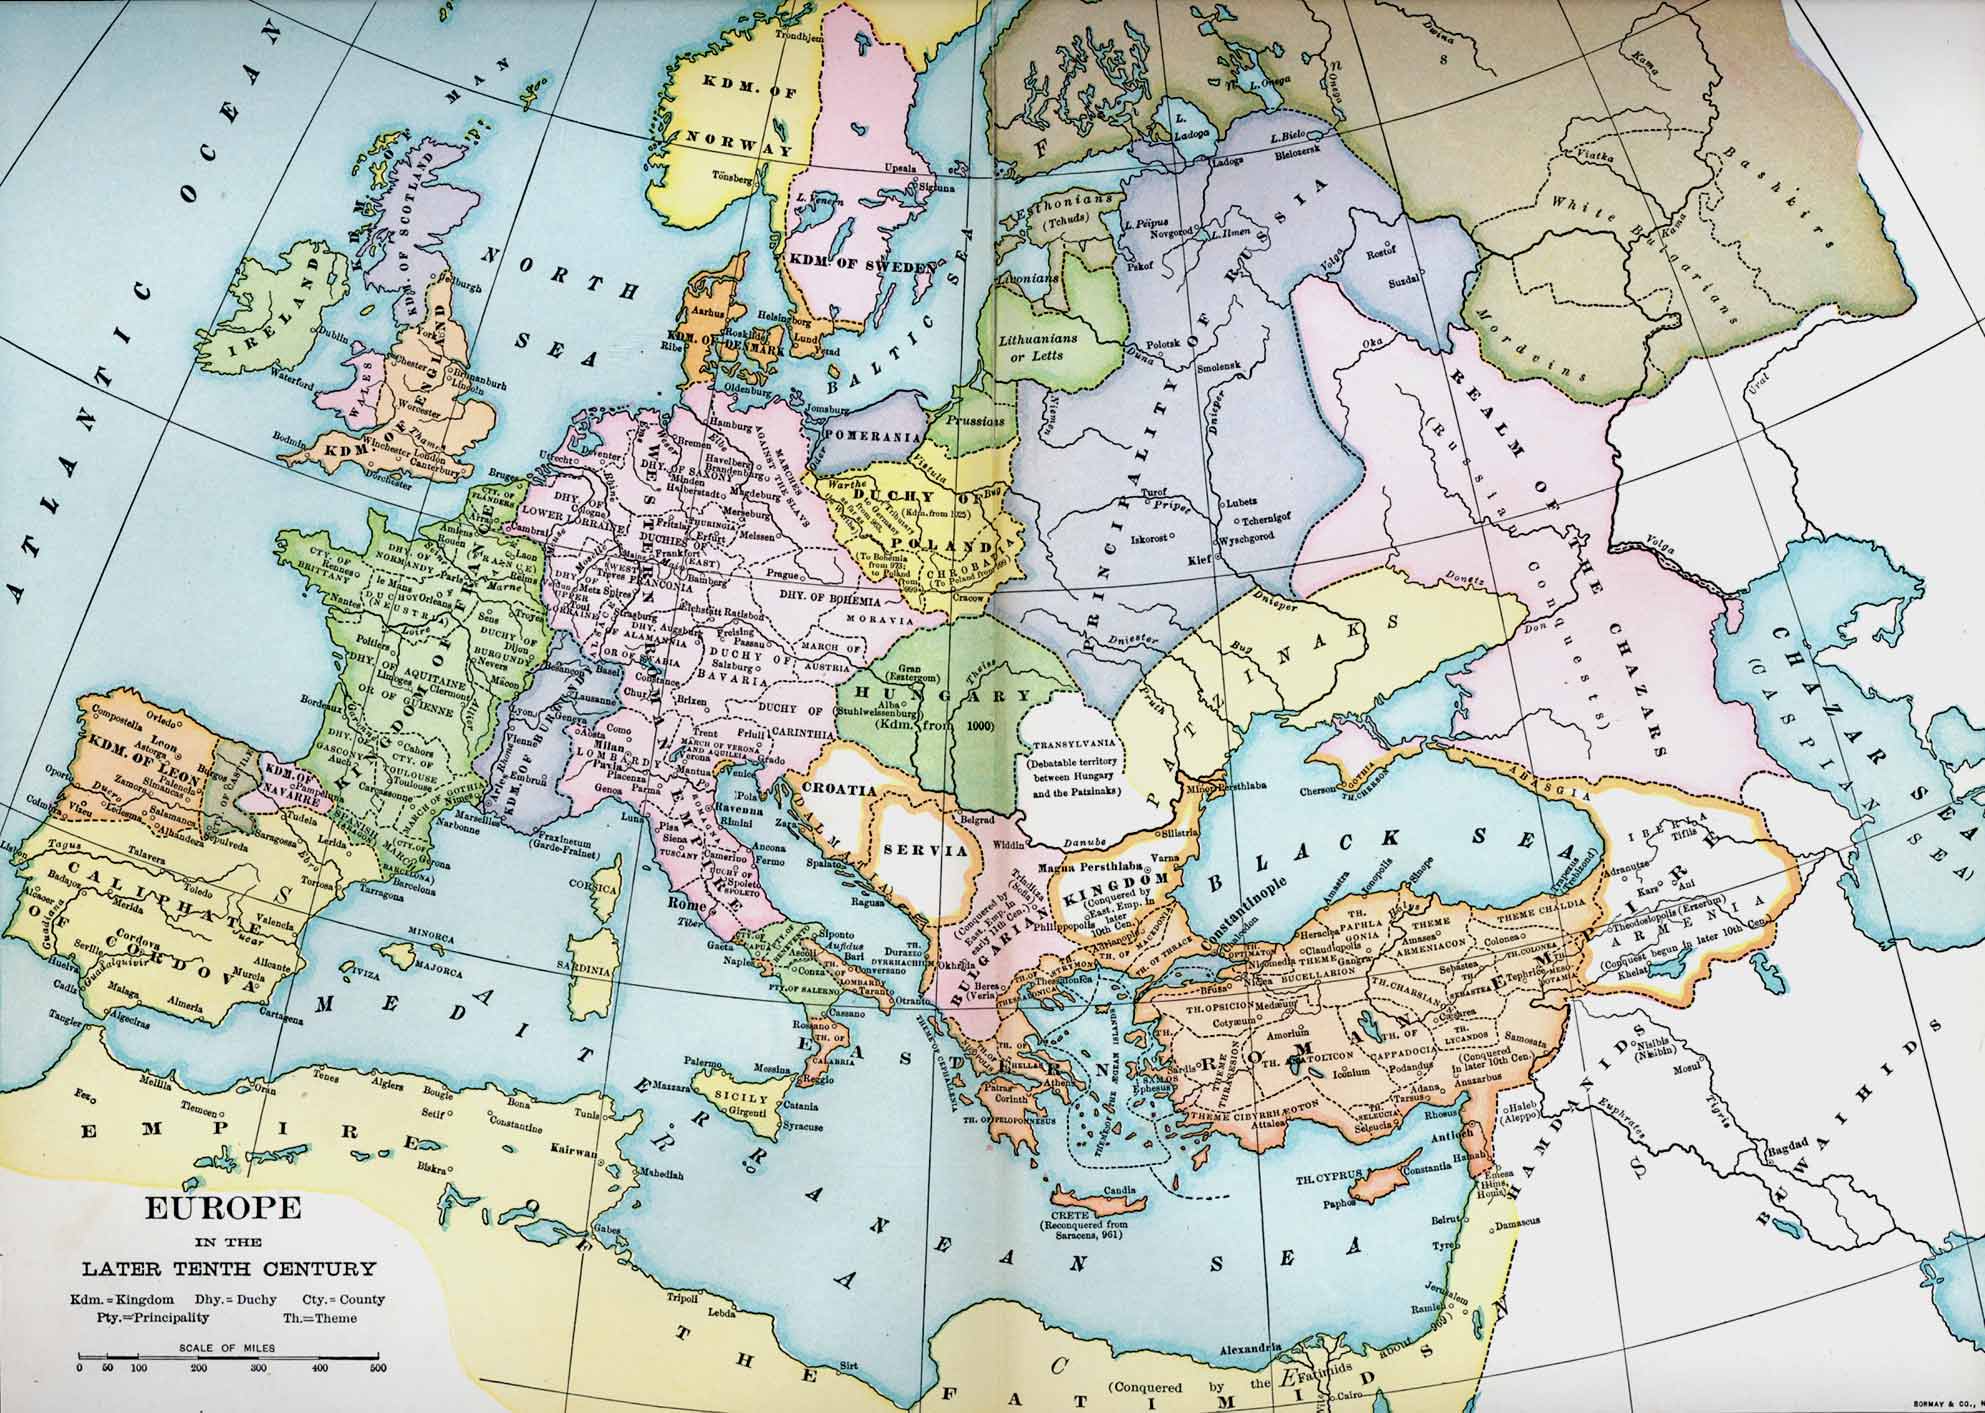 12 13 века европа. Карта Европы в 10 веке. Политическая карта Европы в 9-11 веке. Карта Европы 10 век. Карта средневековой Европы 13 века.